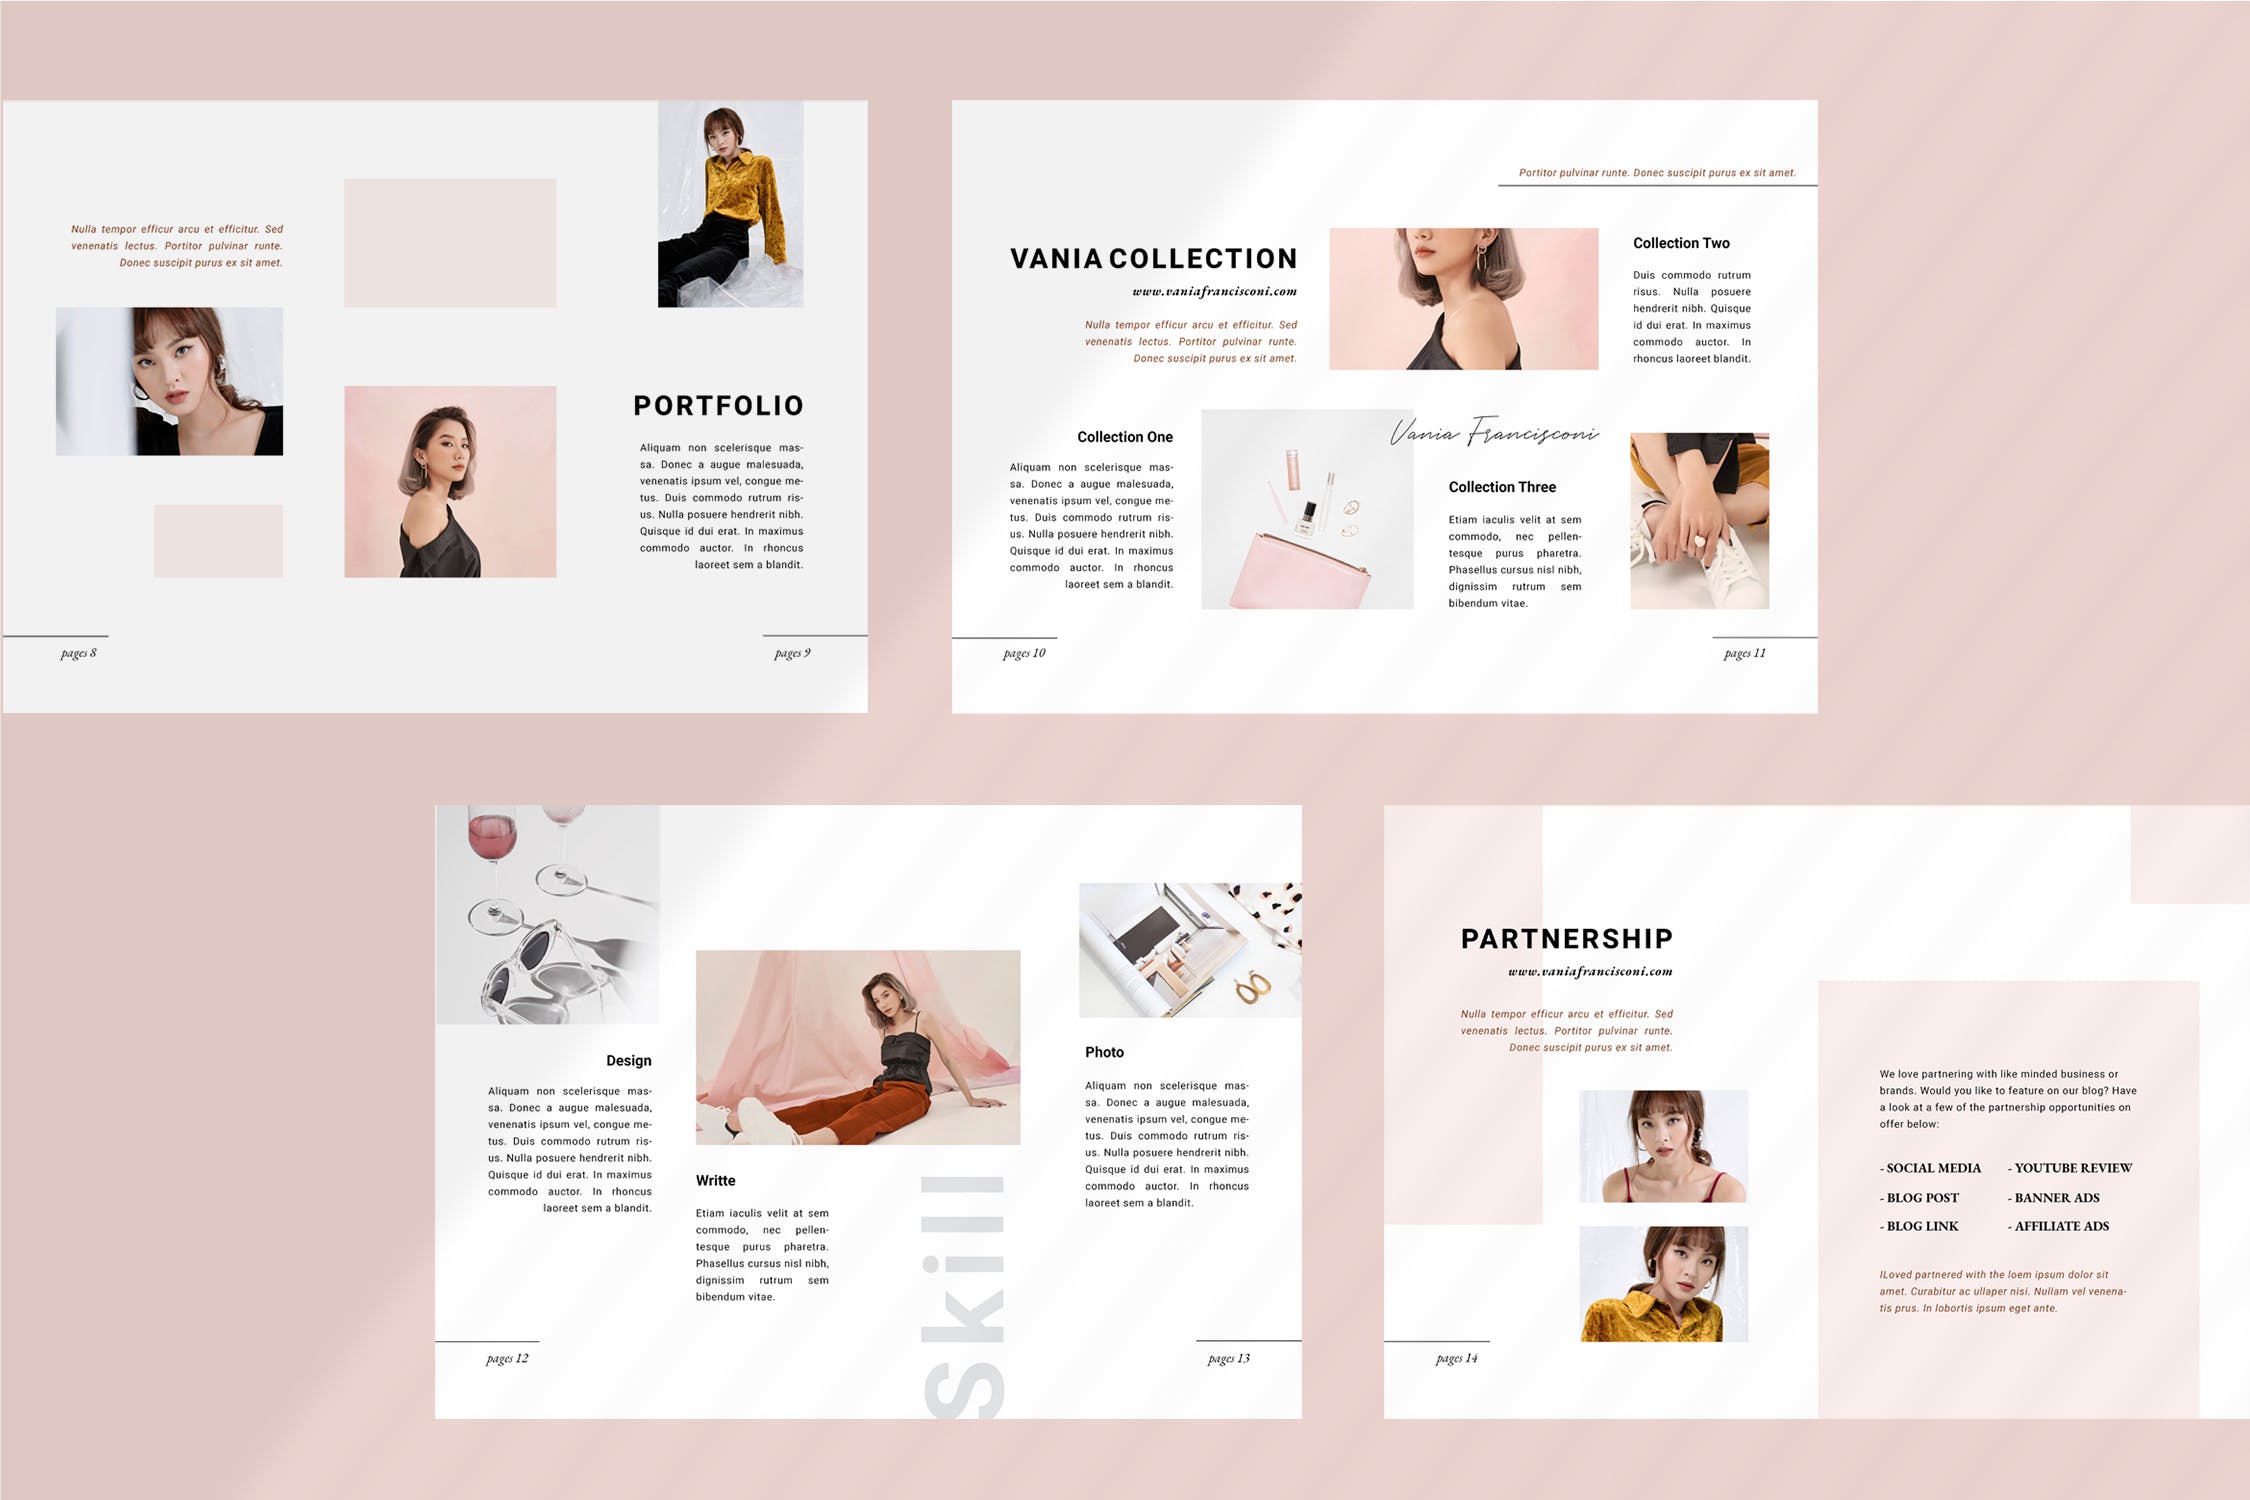 优雅时尚博客媒体品牌宣传设计素材工具包 Vania Media / Press Kit Template插图(4)